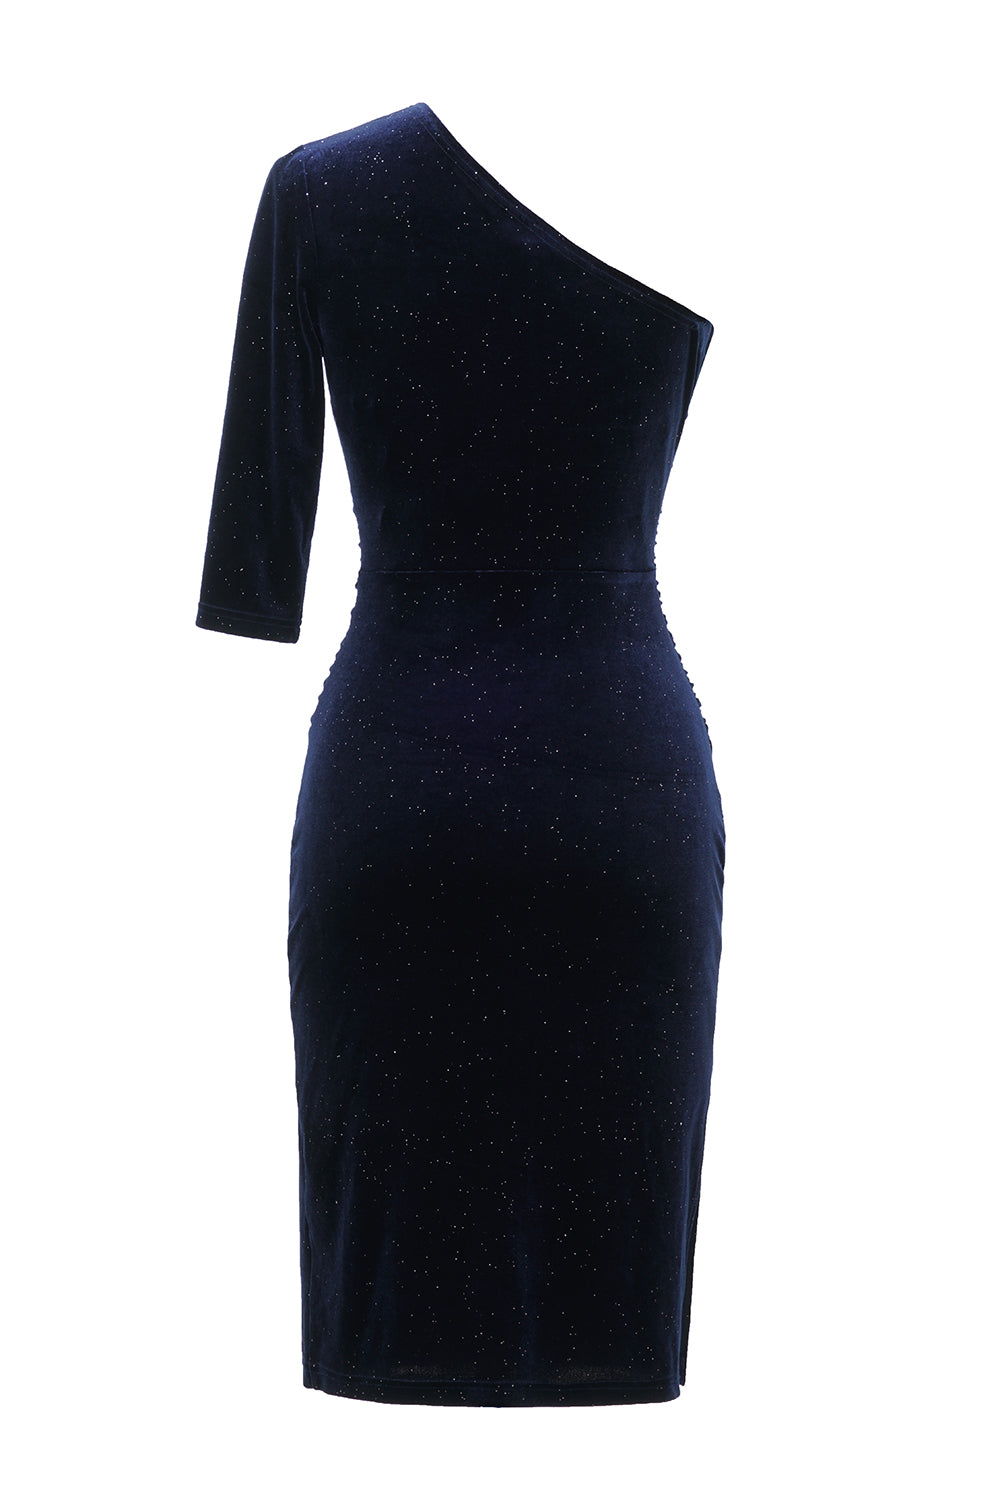 One Shoulder Blue Bodycon Velvet Dress